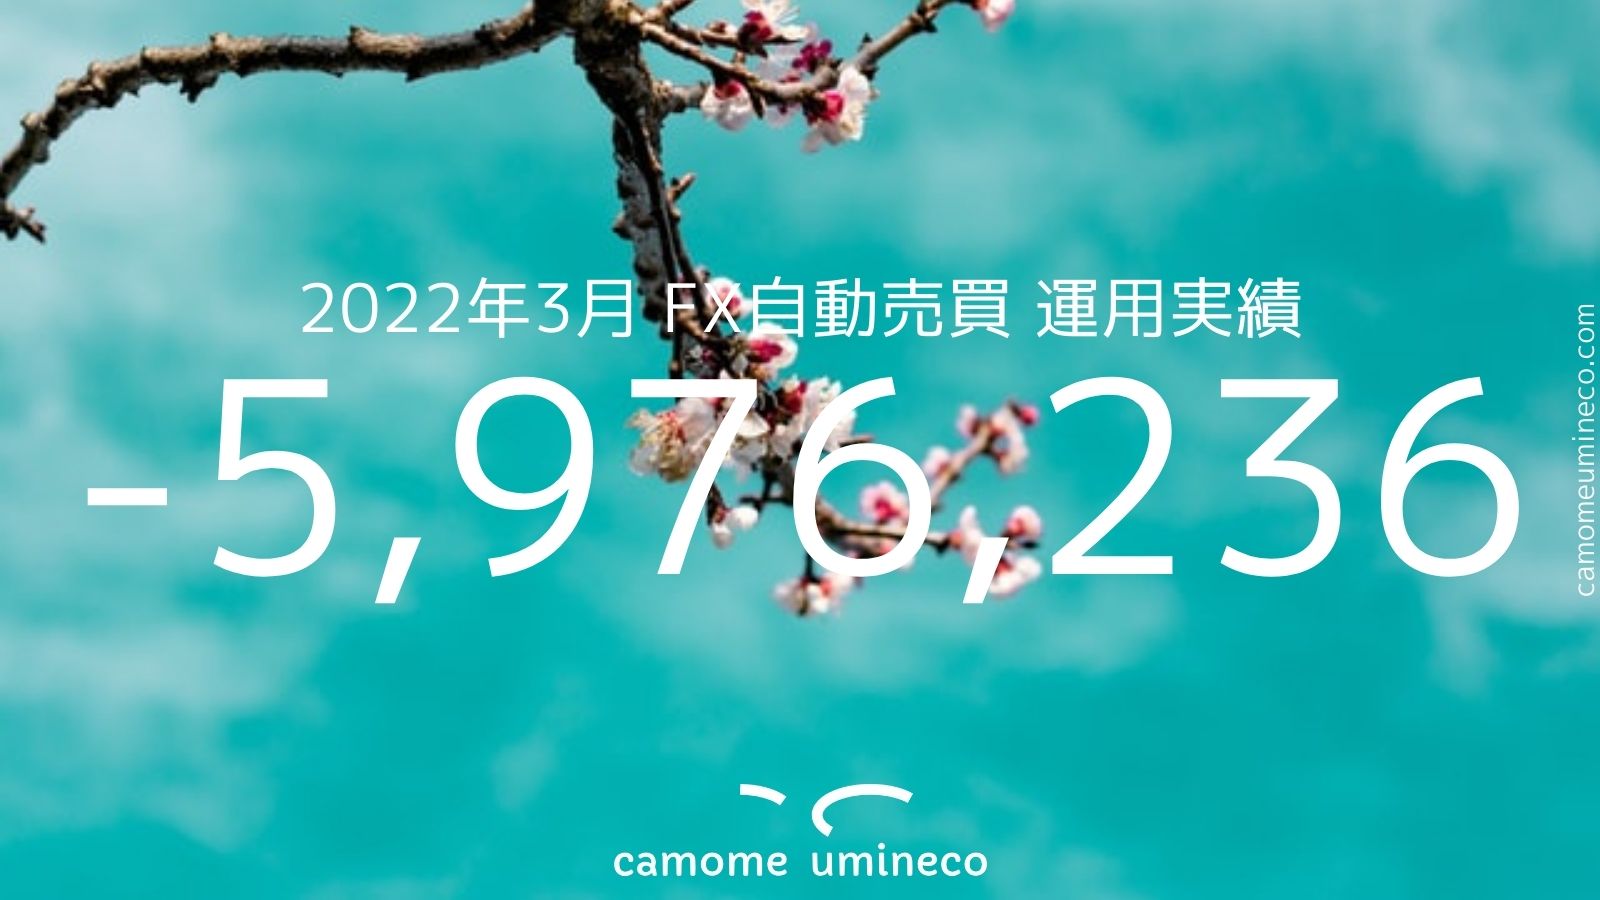 【トライオートFX】2022年3月 運用実績-5,976,236円